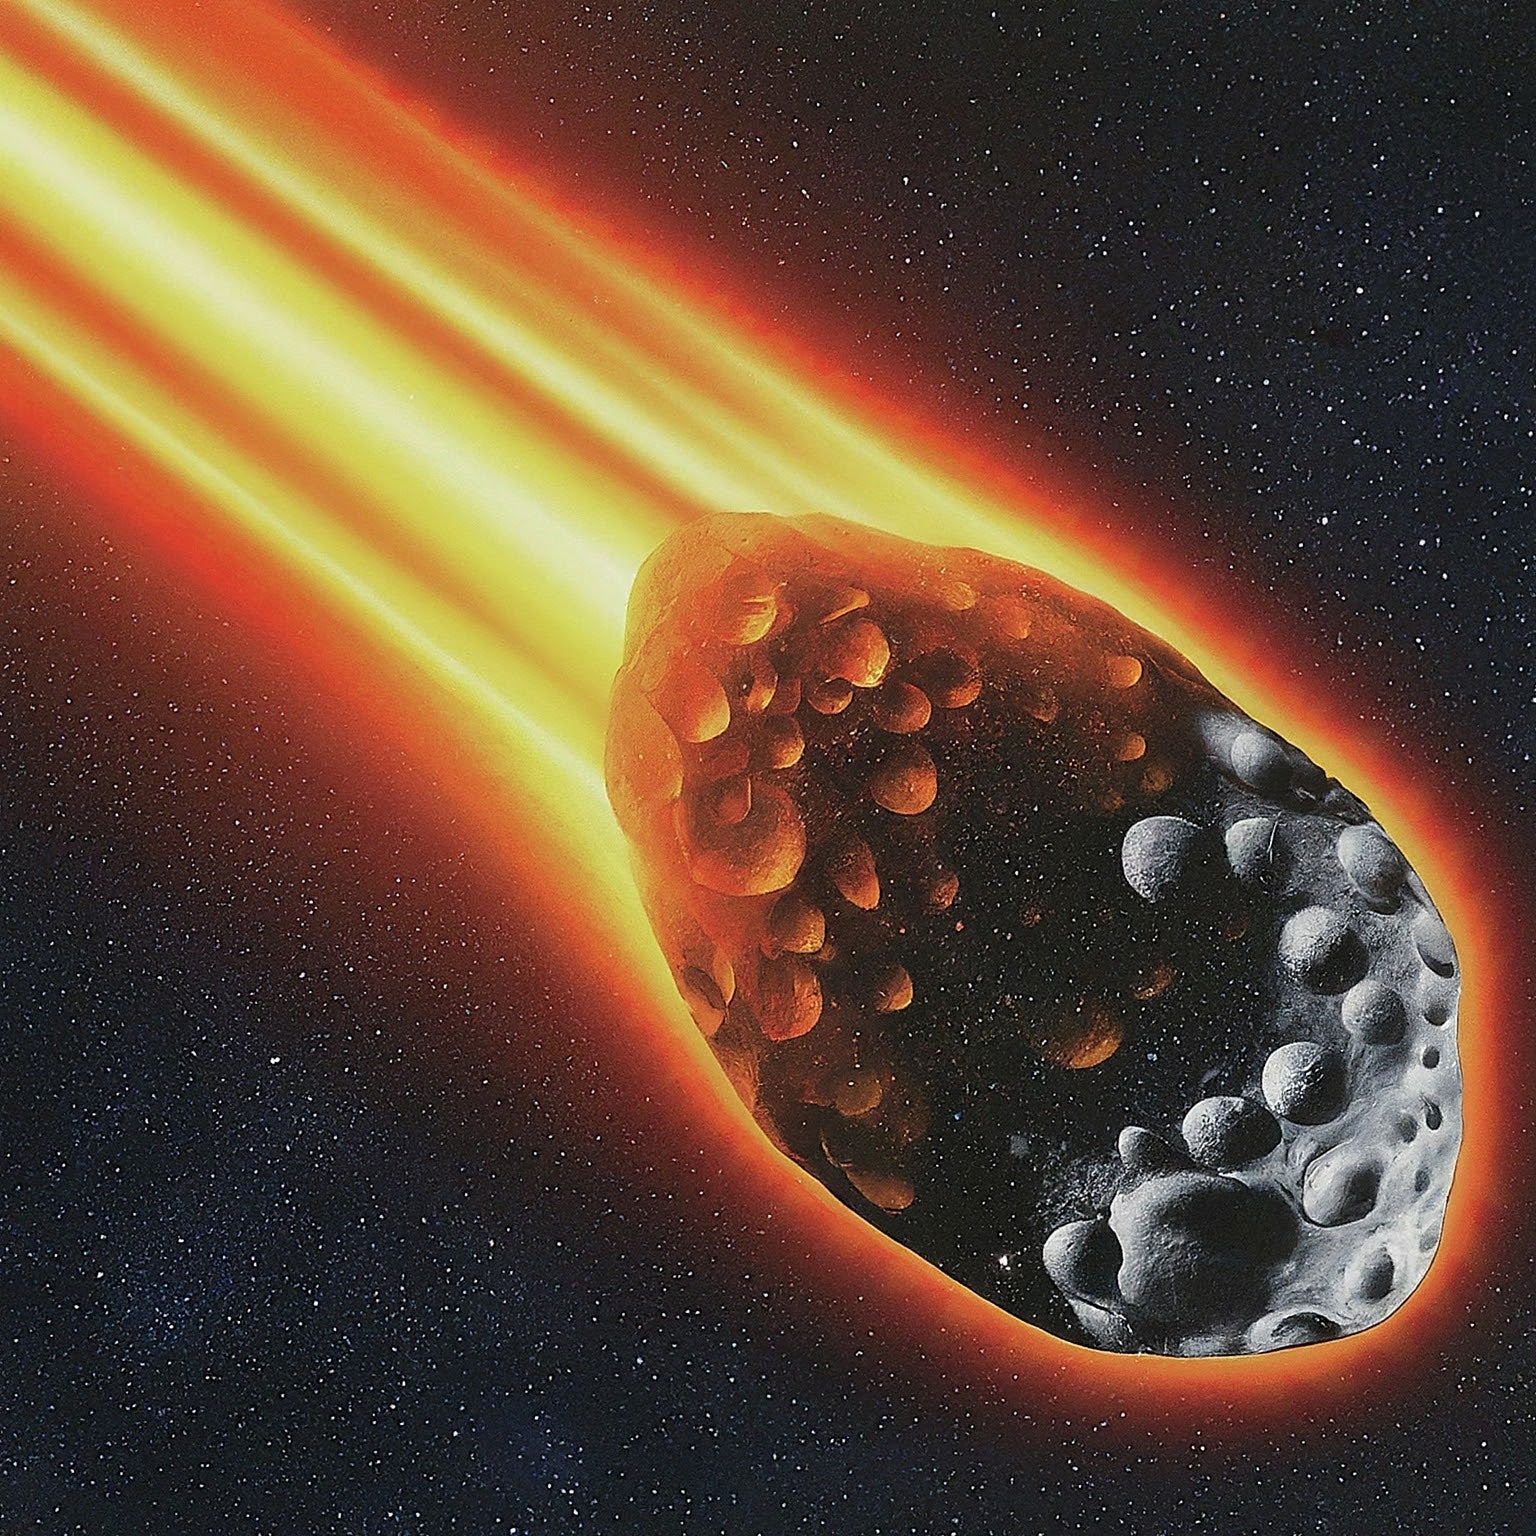 metal detecting meteorites